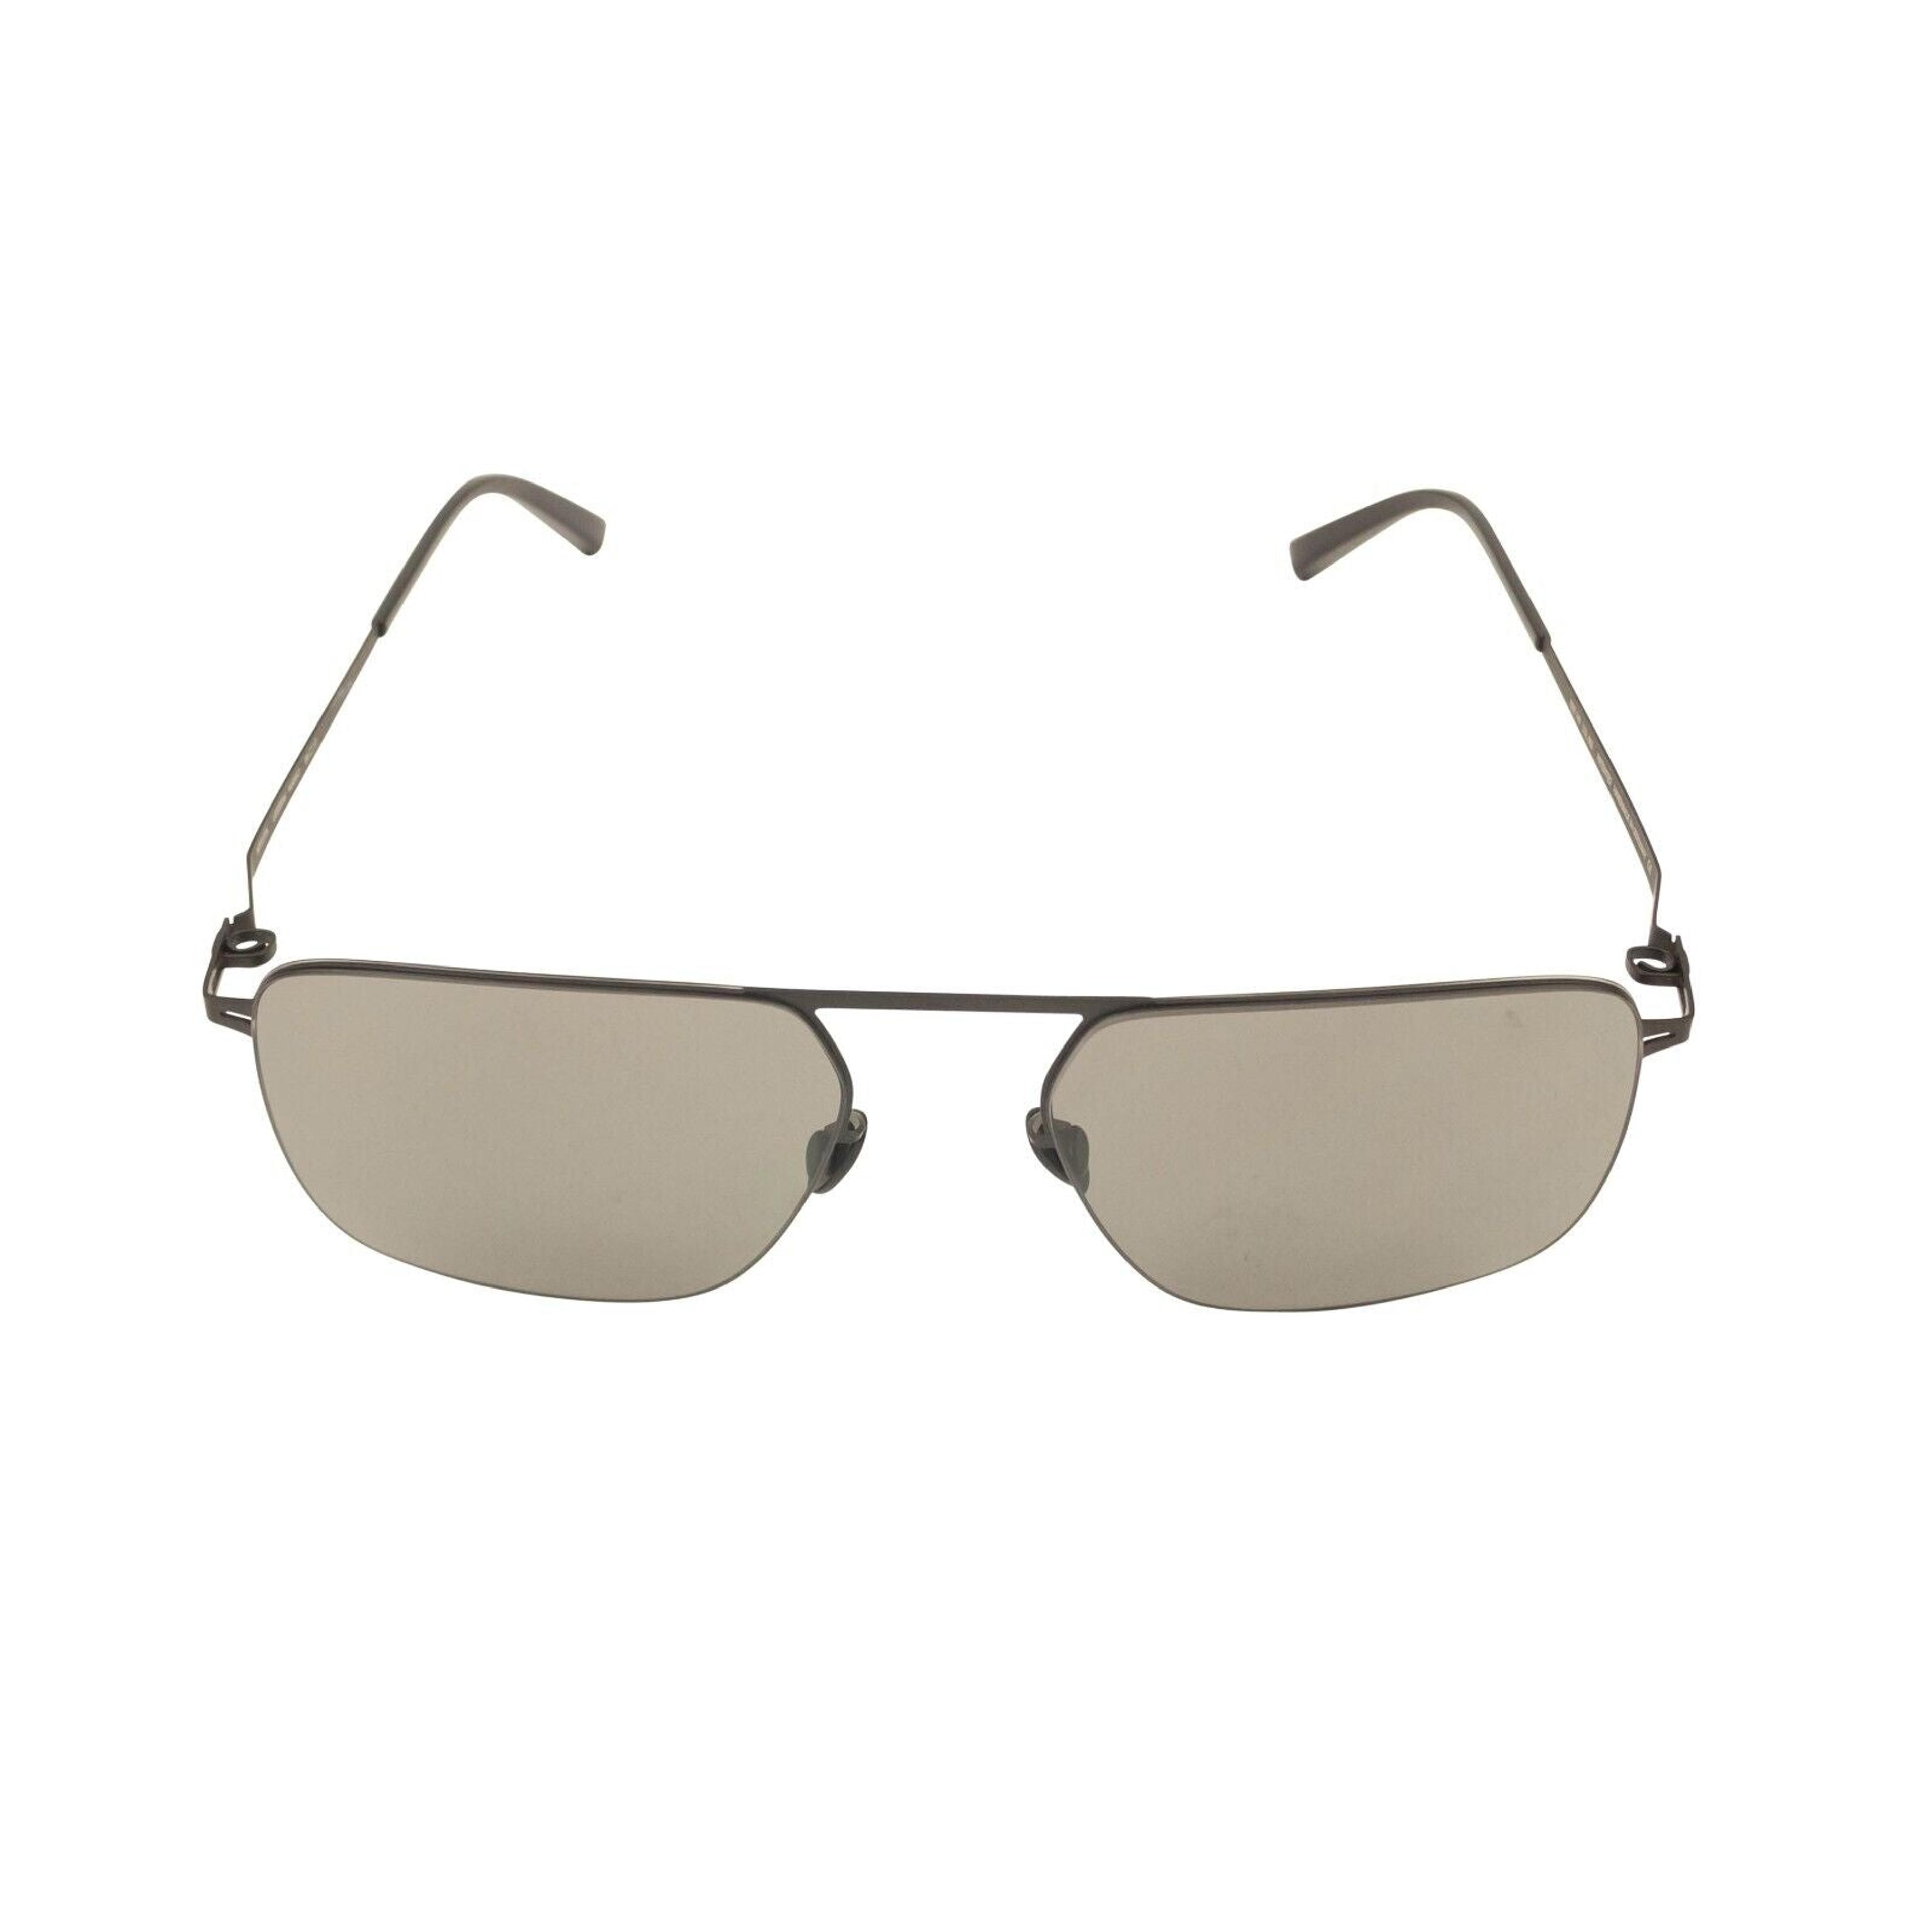 Alternate View 2 of Black Olga Masao Square Wire Sunglasses